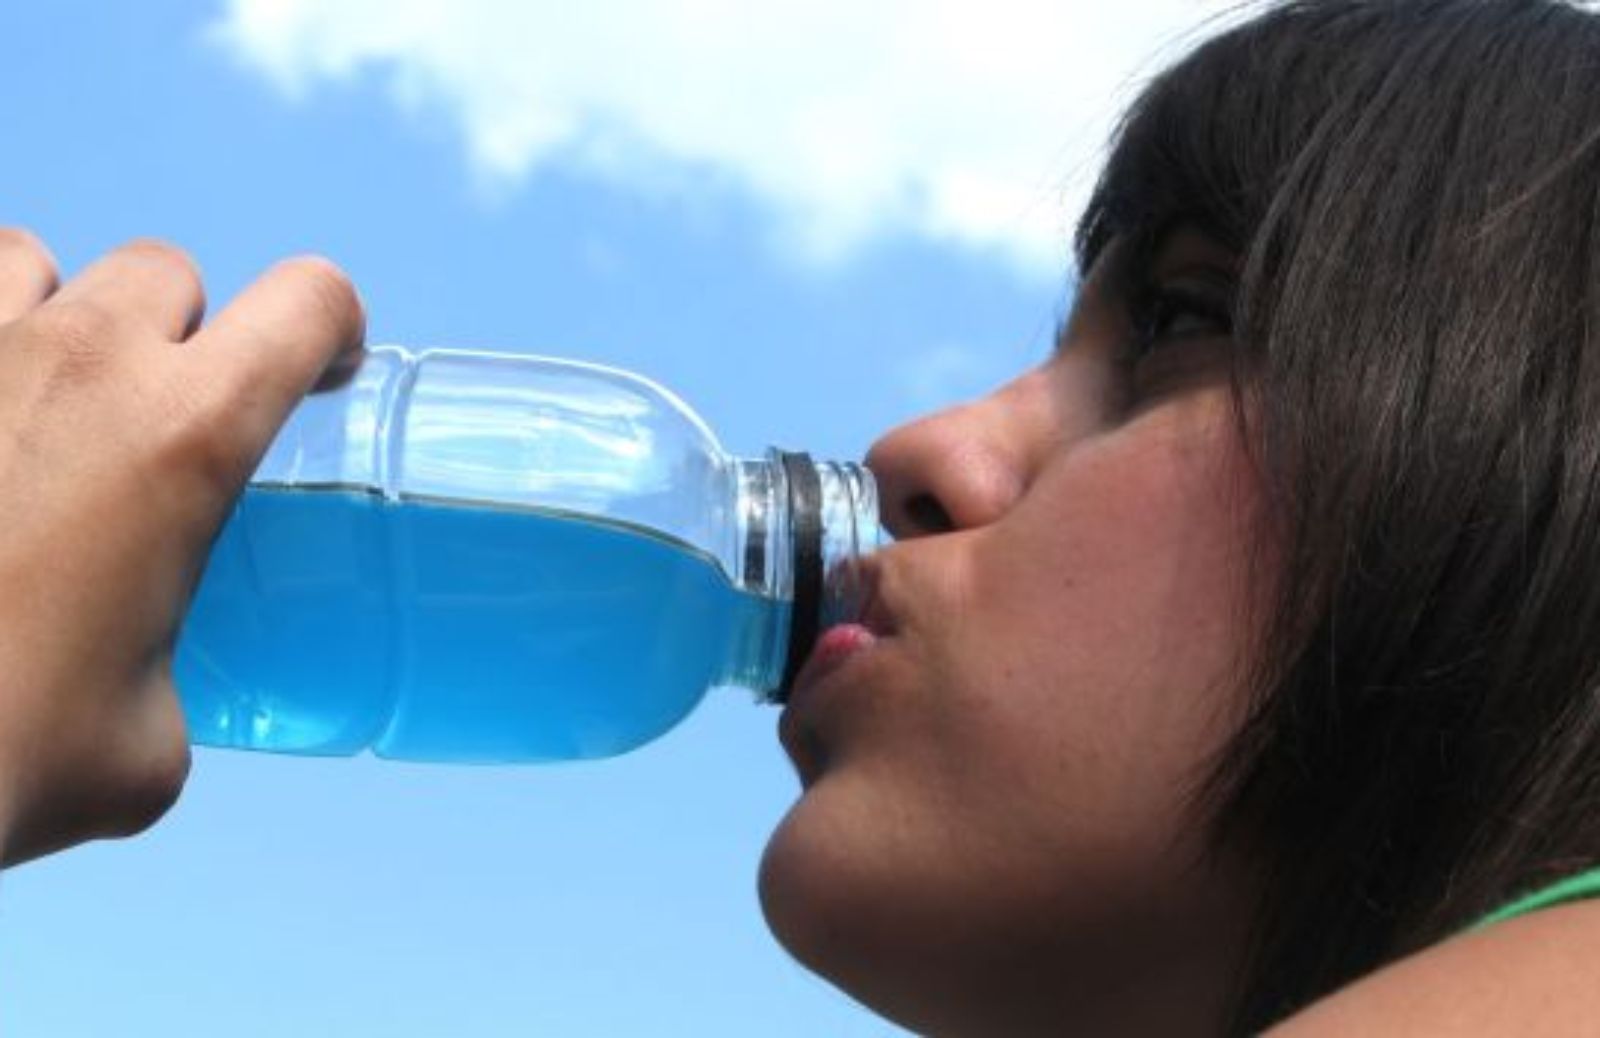 Come rinunciare all'acqua in bottiglia